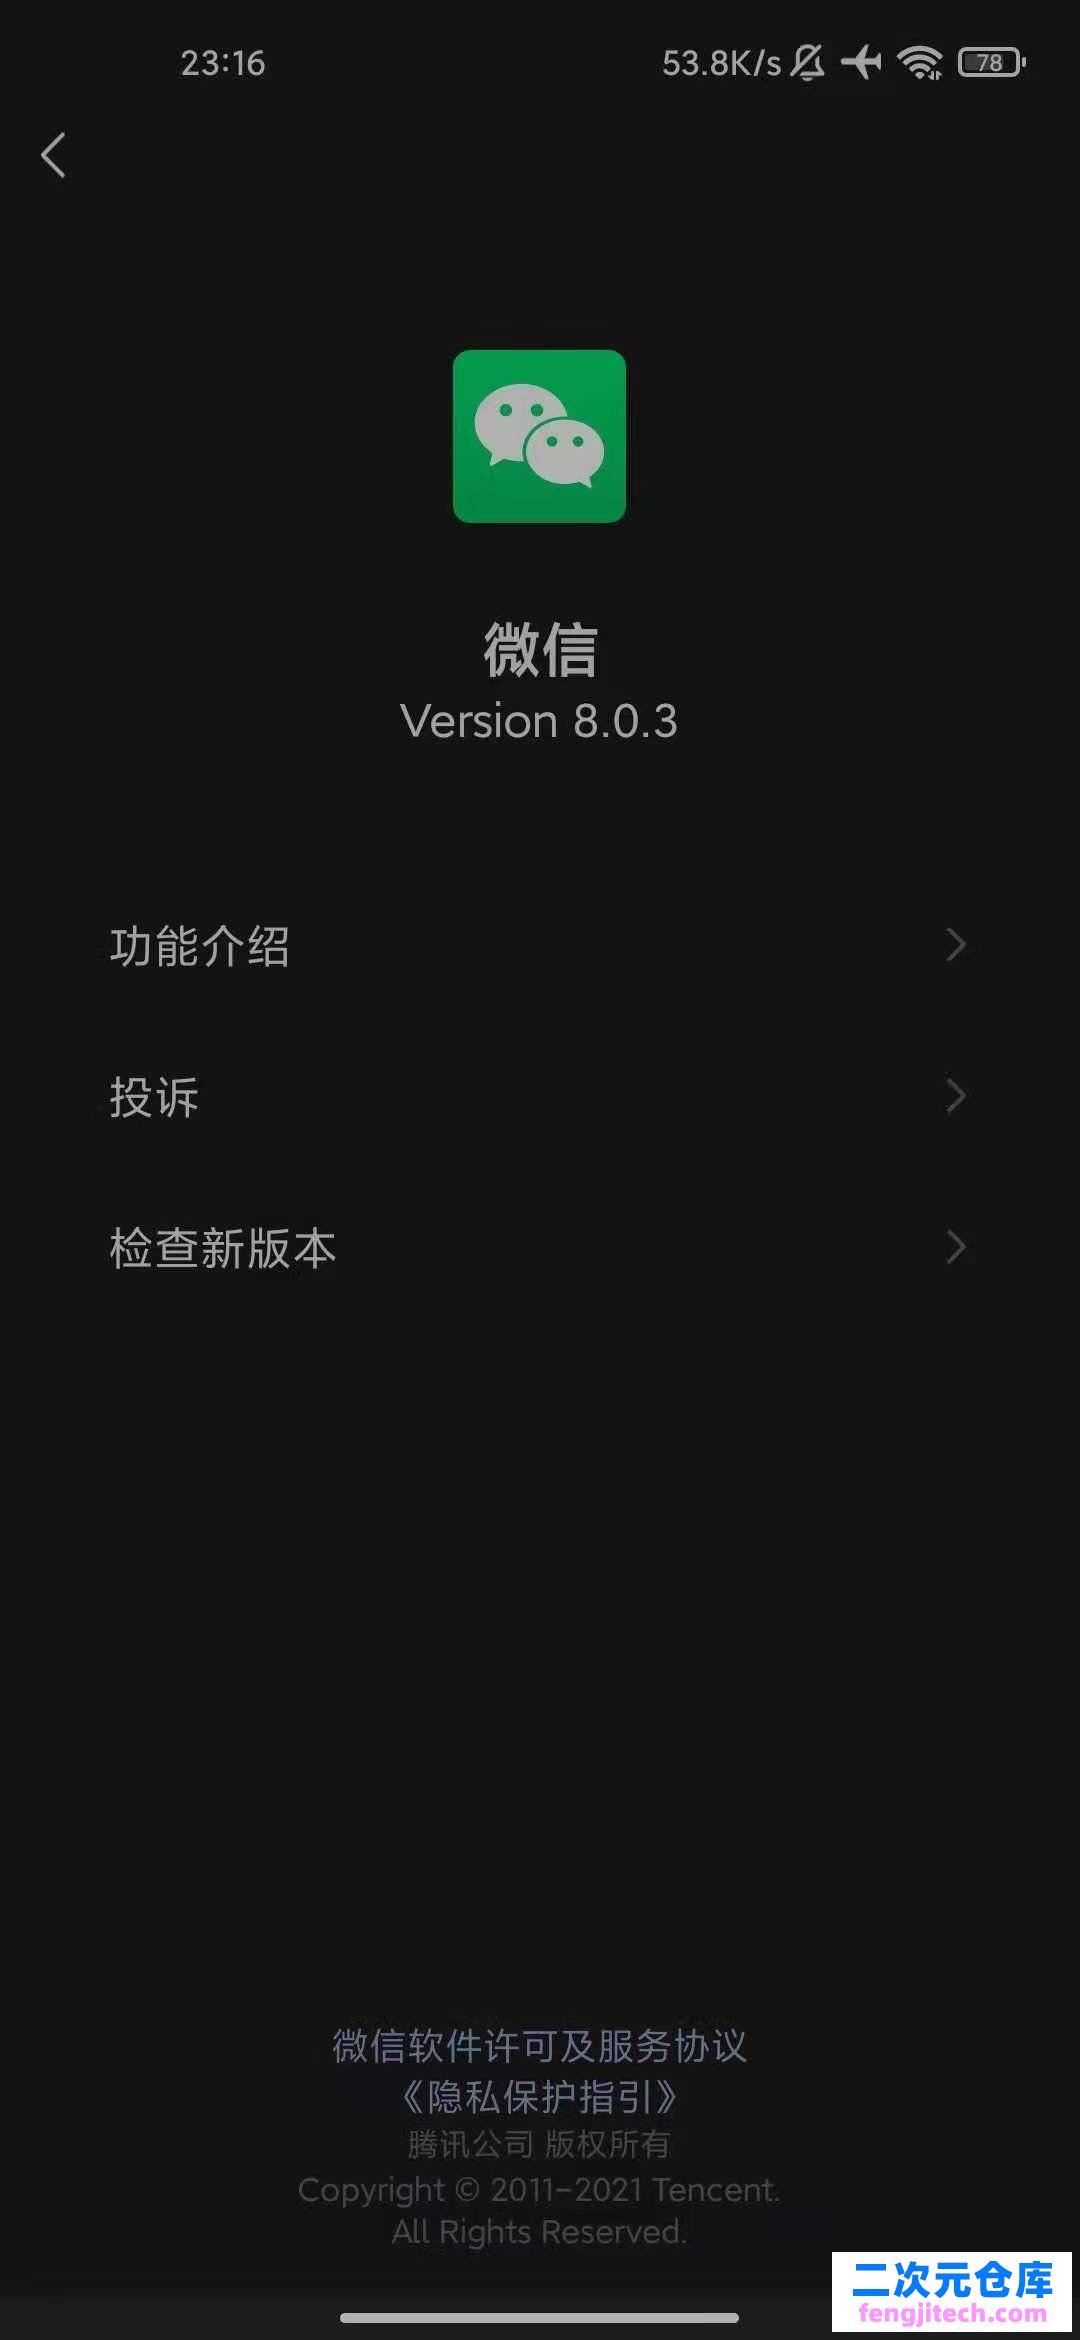 微信 WeChat 8.0.3 for Android 官方正式版